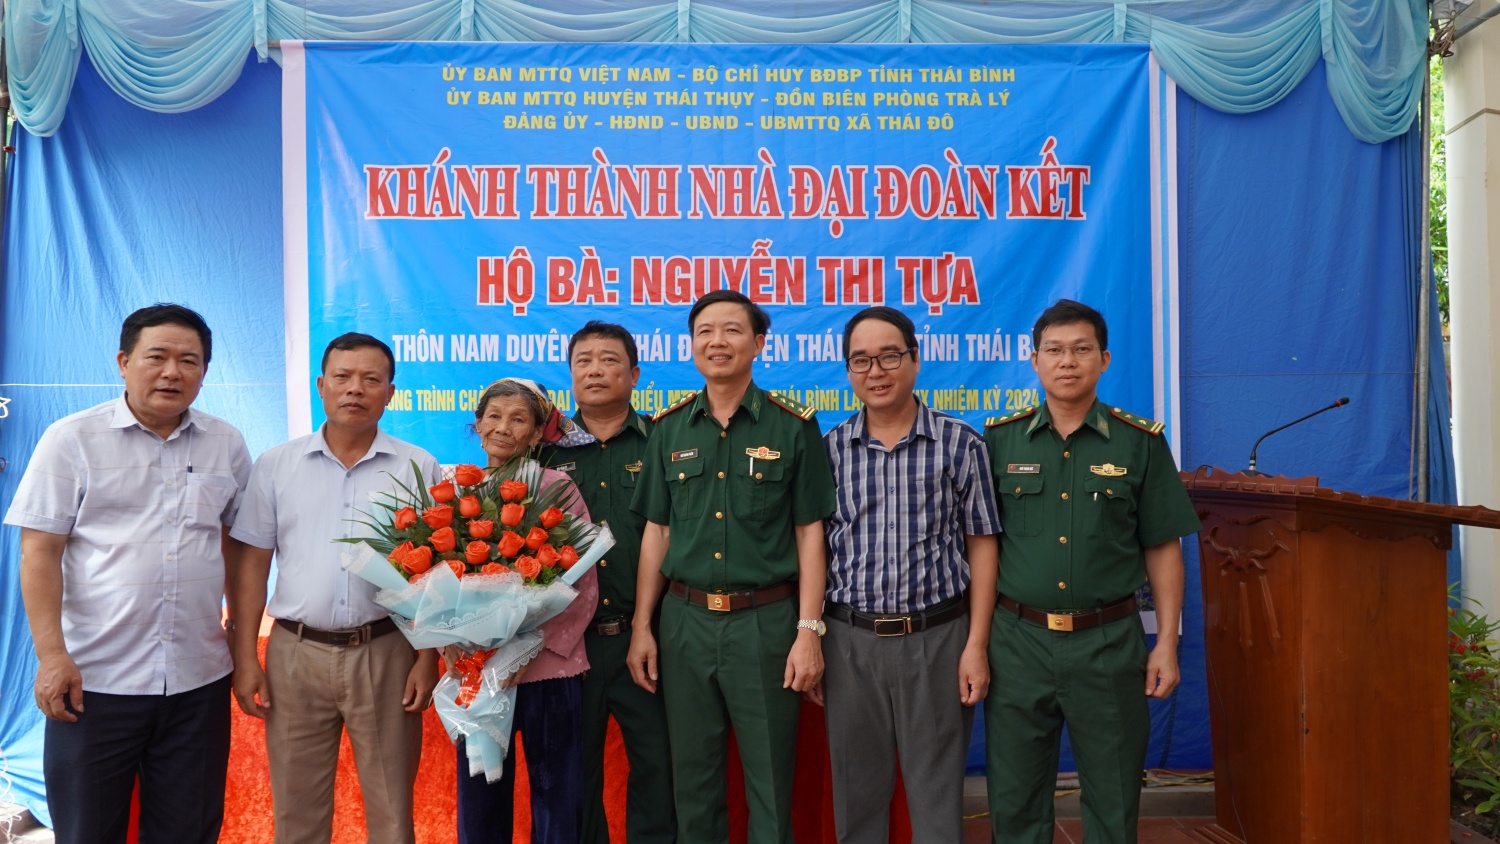 NMNĐ Thái Bình 2 hỗ trợ xây dựng nhà Đại đoàn kết trên địa bàn tỉnh Thái Bình